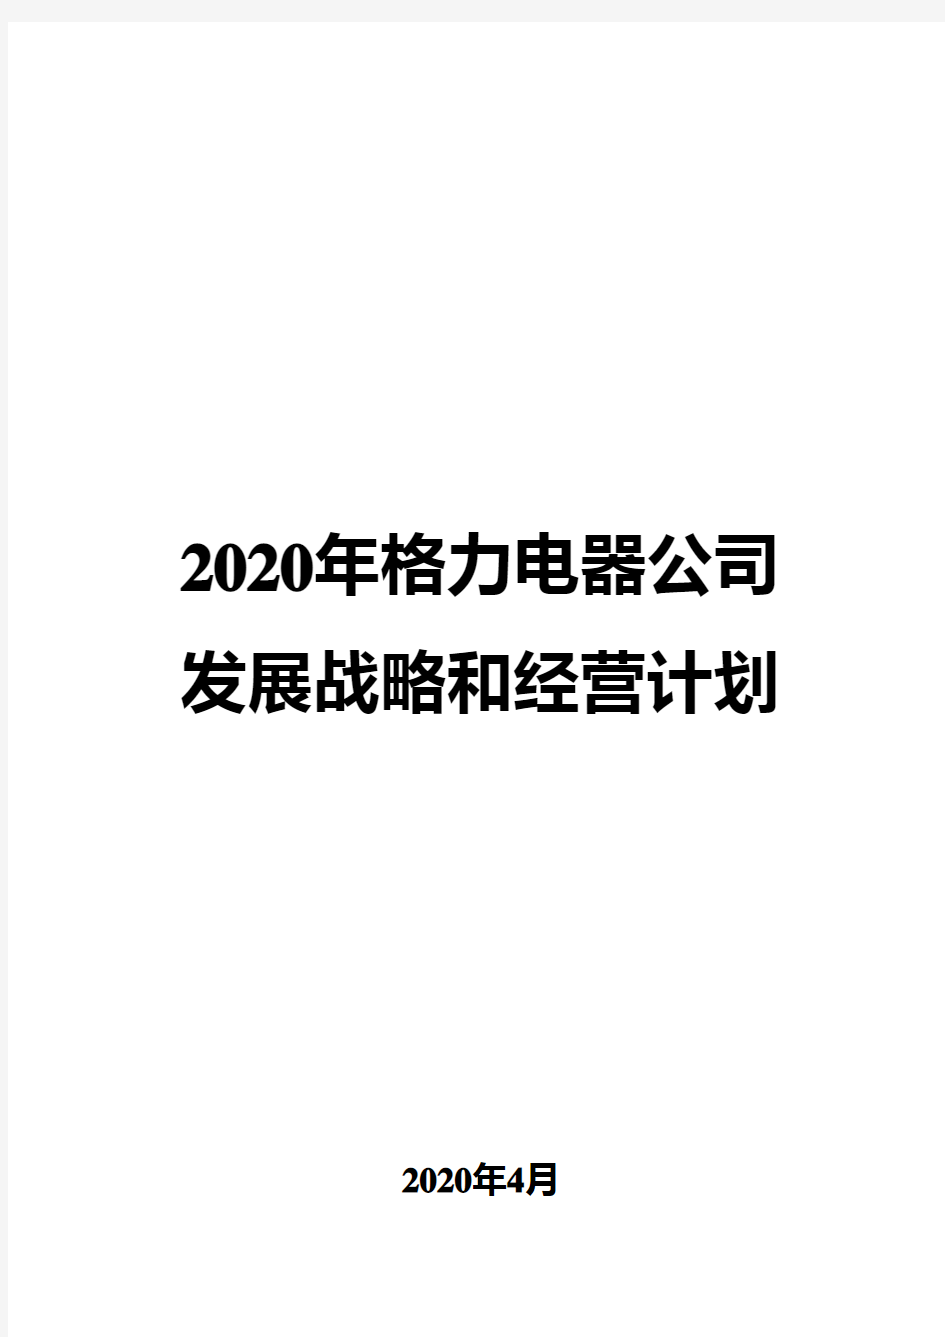 2020年格力电器公司发展战略和经营计划